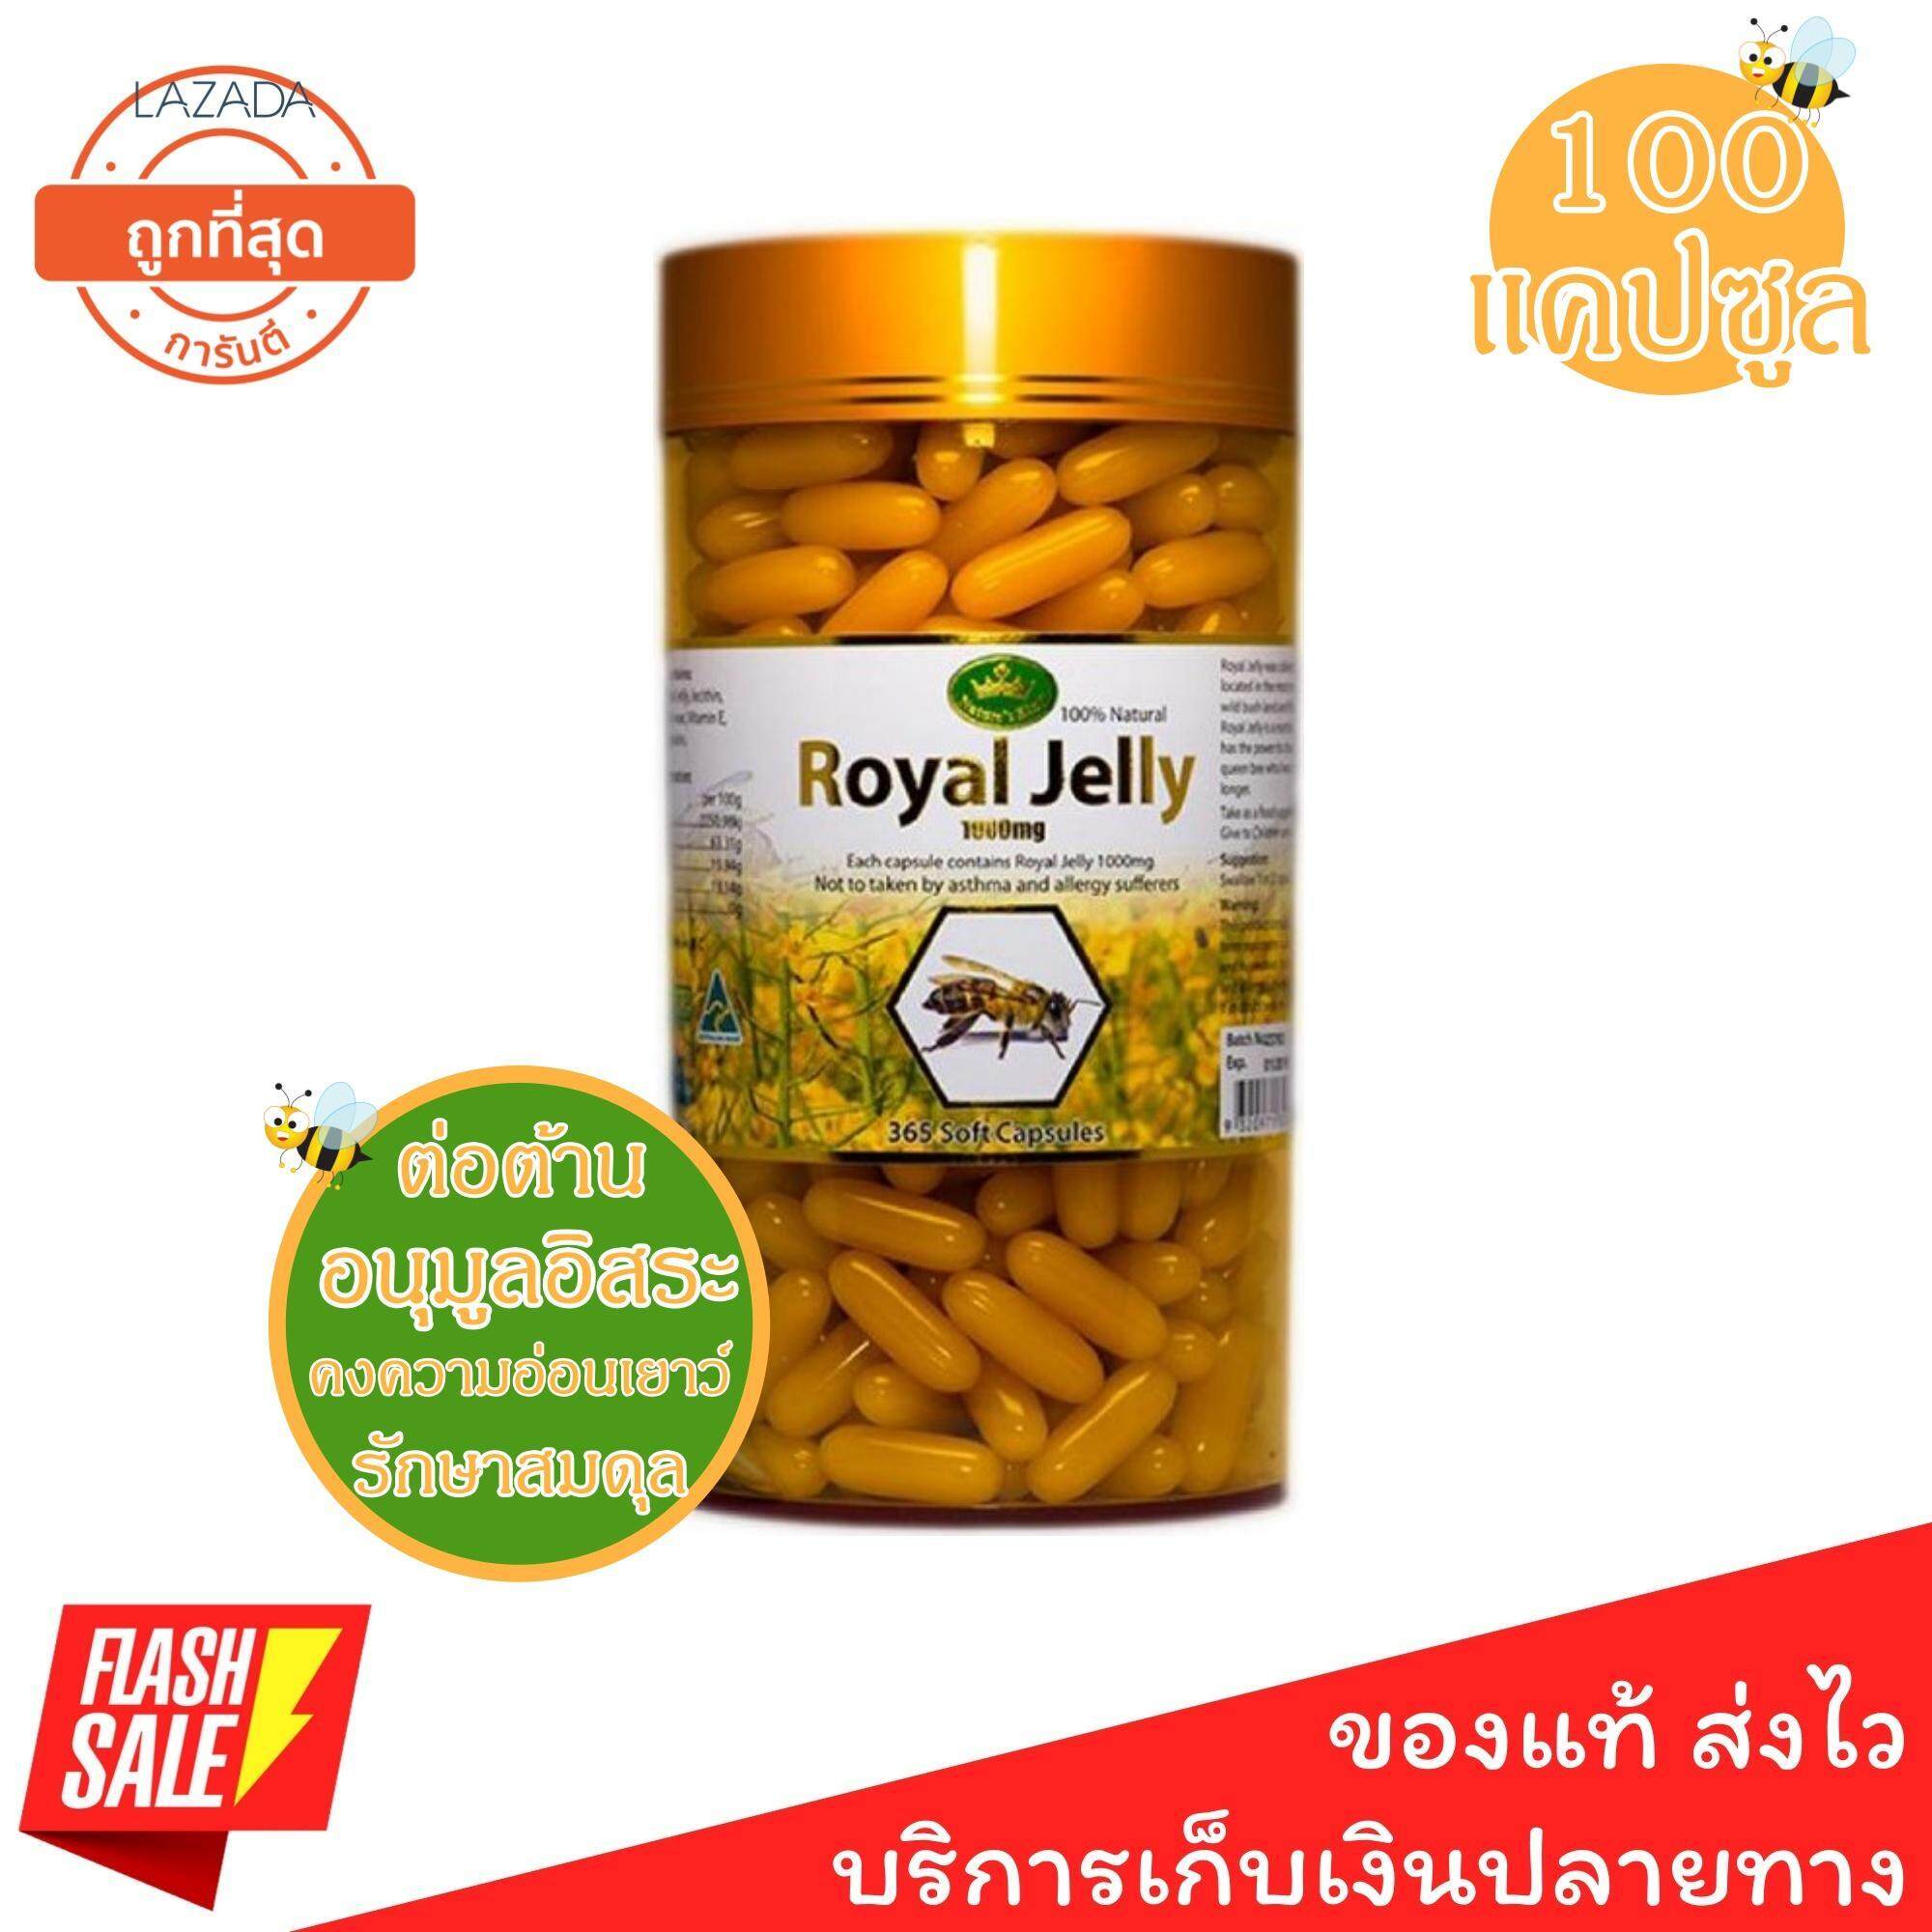 [[ของแท้100%]] นมผึ้ง royal jelly 1000 mg. Nature King Royal jelly น้ำนมผึ้ง ต่อต้านอนุมูลอิสระ คงความอ่อนเยาว์ รักษาสมดุล นำเข้าจากออสเตรเลีย 365 แคปซูล (จำนวน 1 กระปุก)